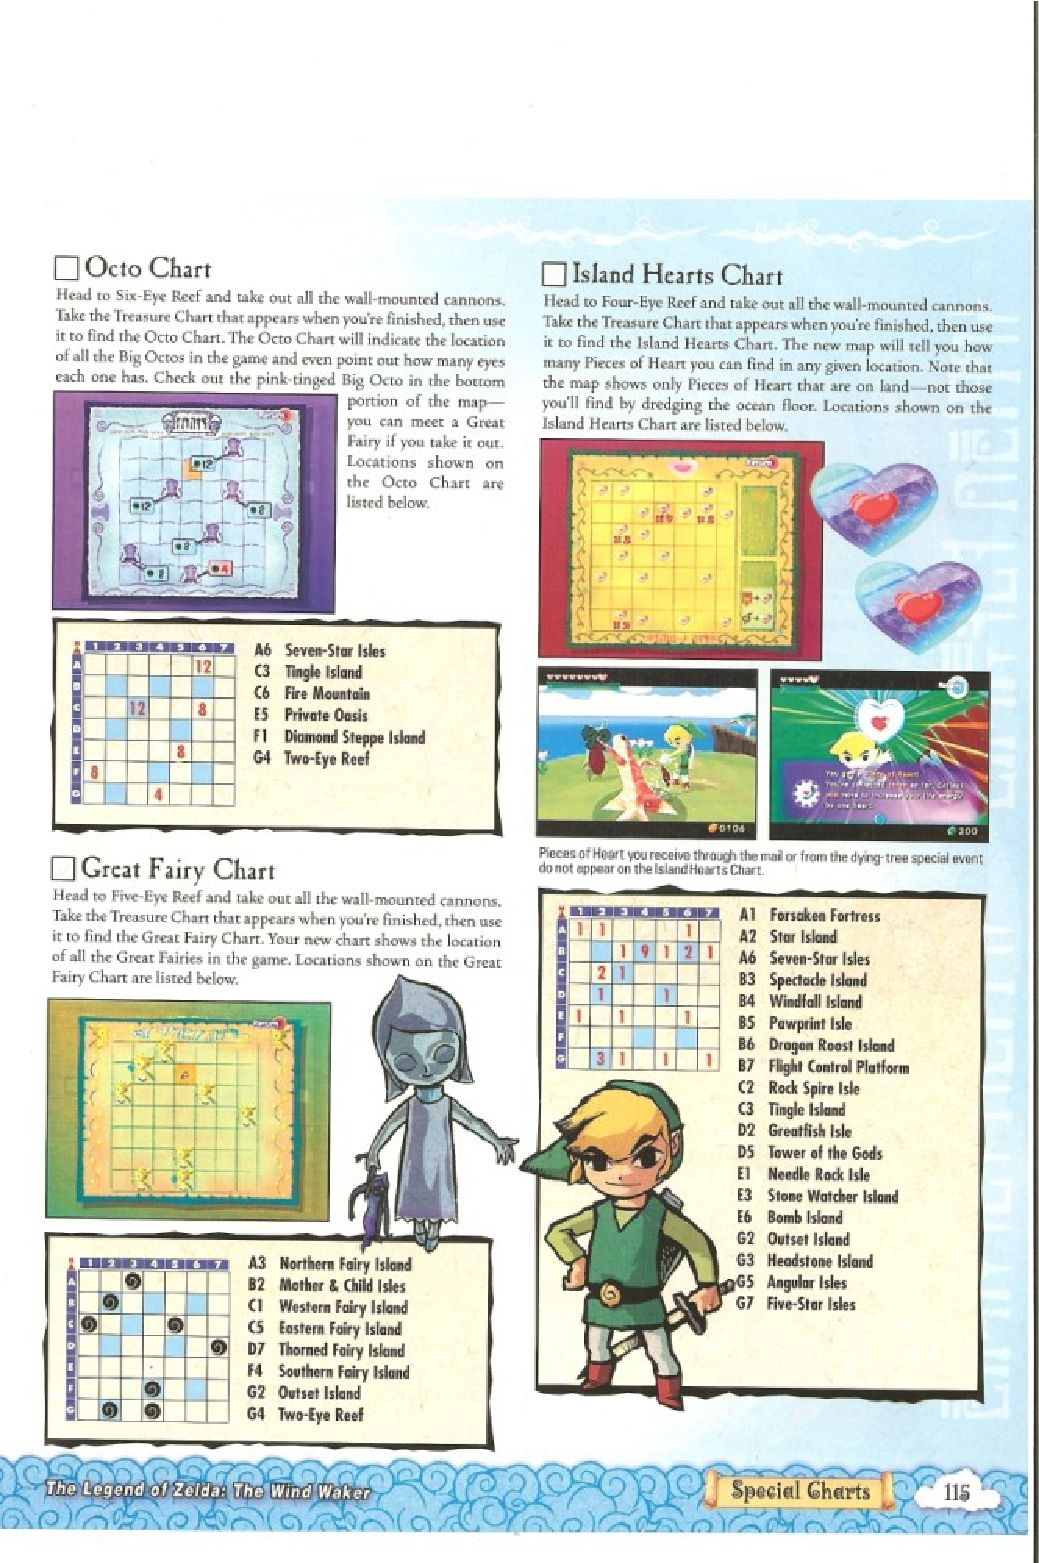 The Legend of Zelda - wind waker - Strategy Guide 117